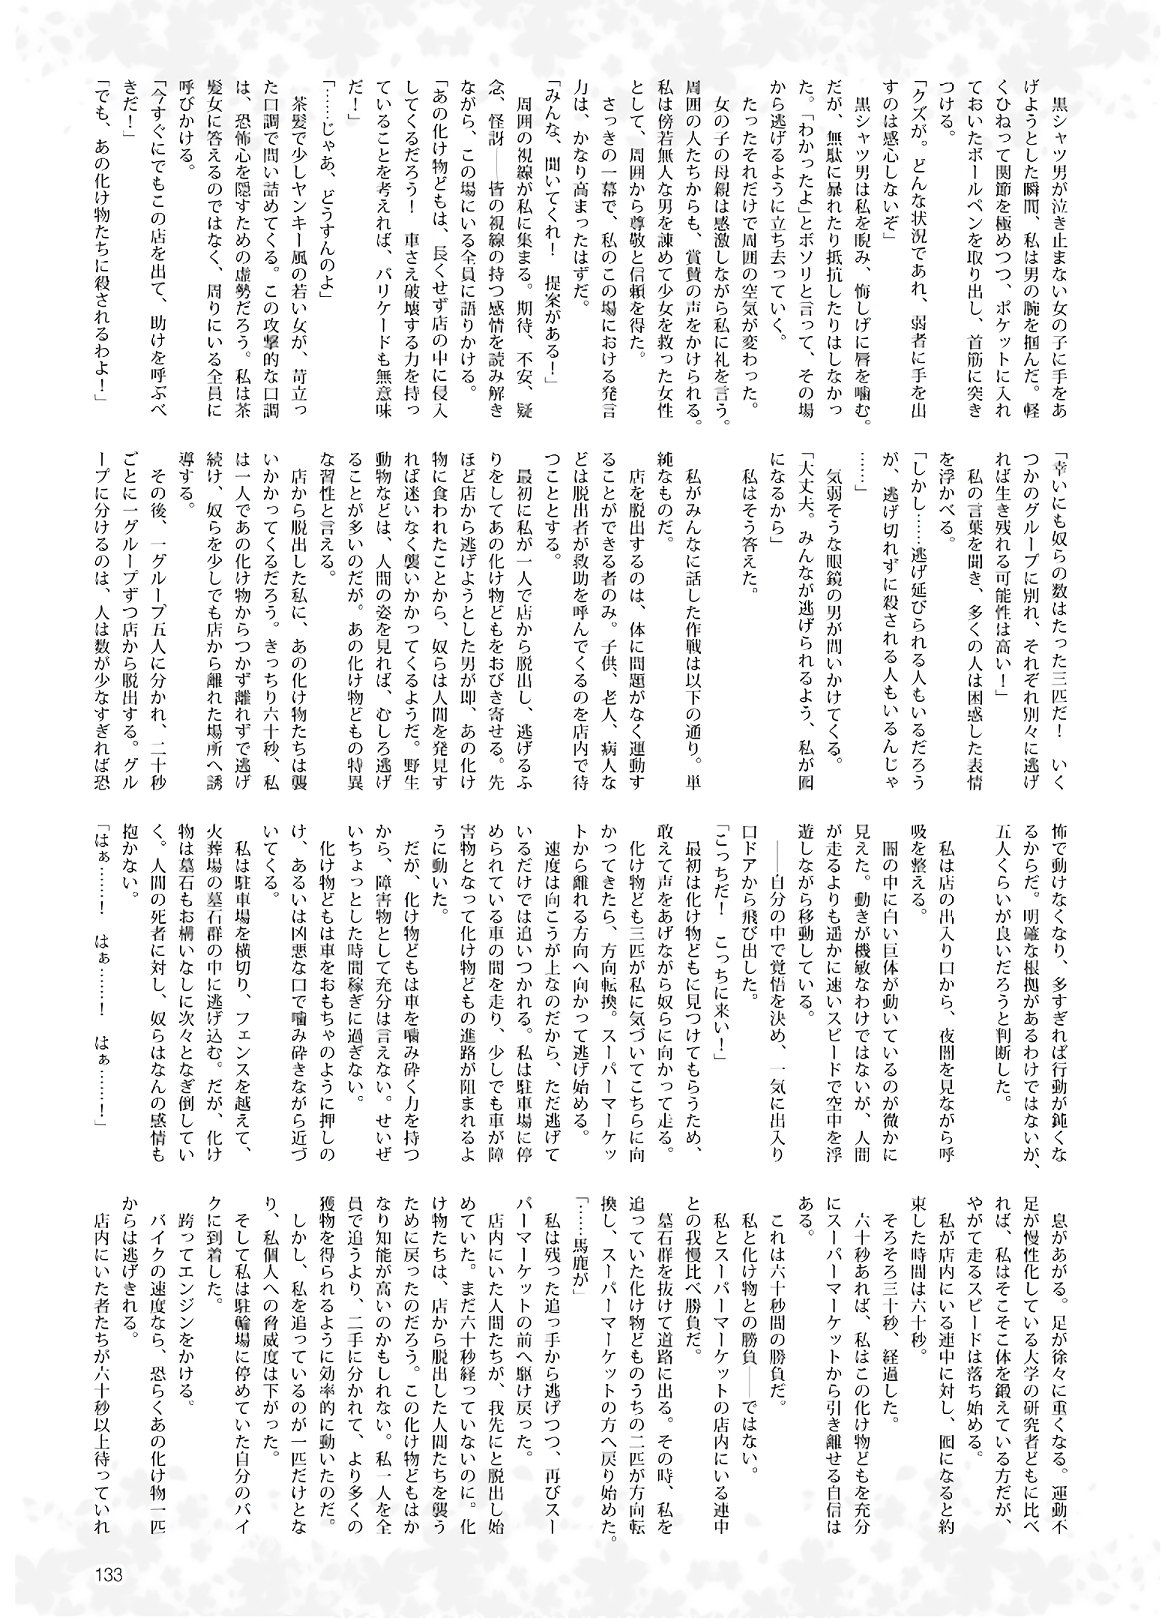 Dengeki G's Magazine #286 - May 2021 130